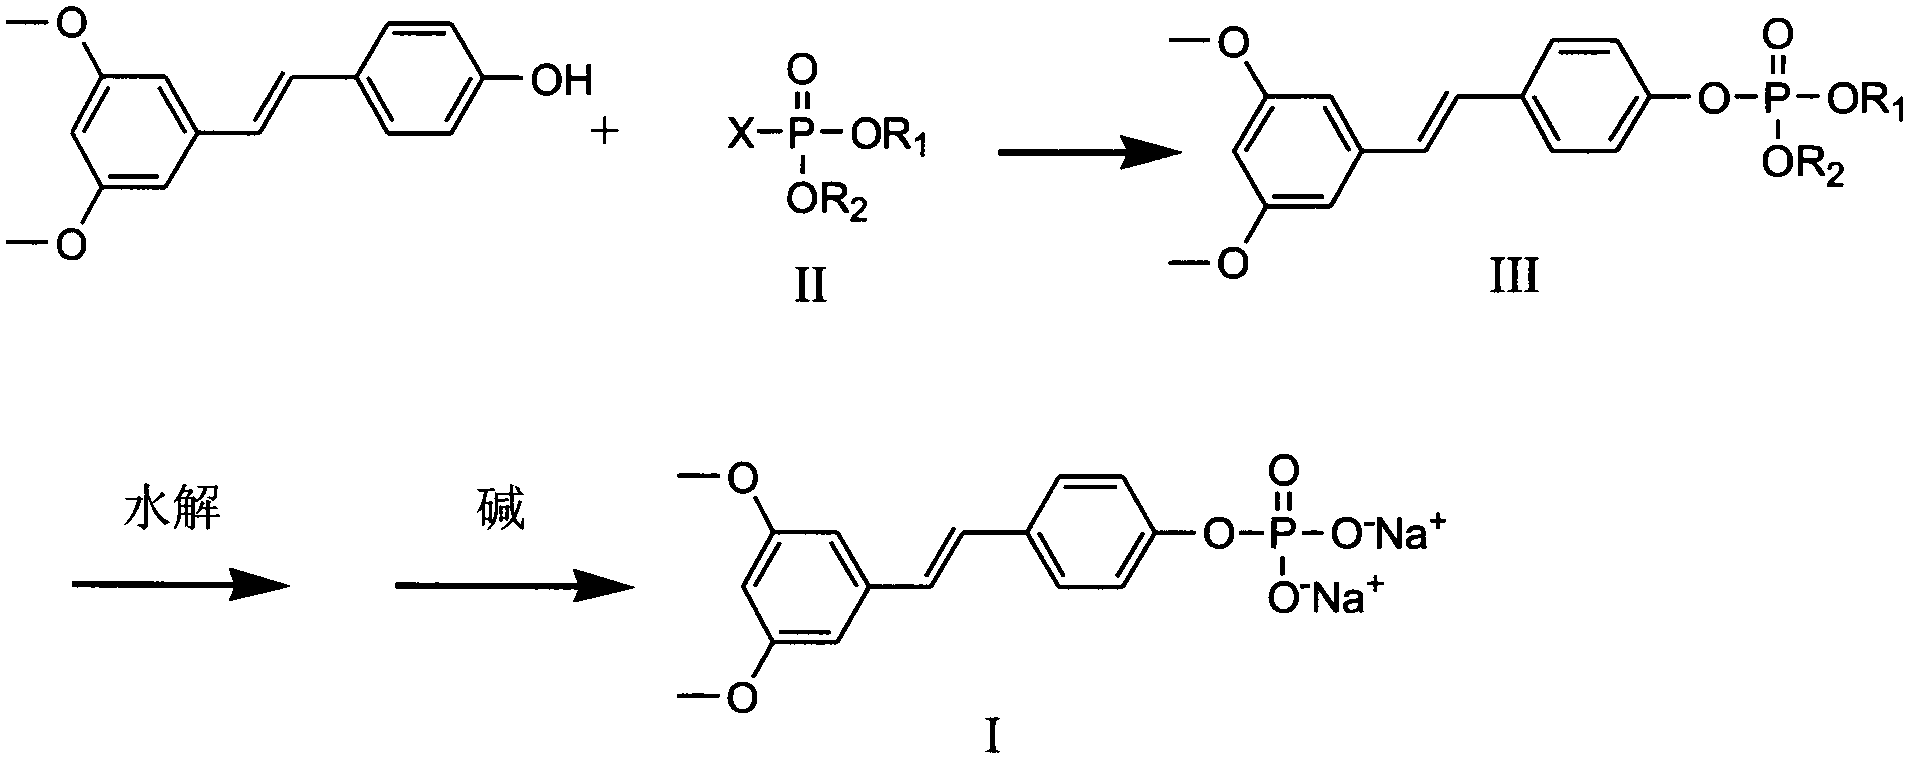 Pterostilbene phosphate disodium salt synthesis method